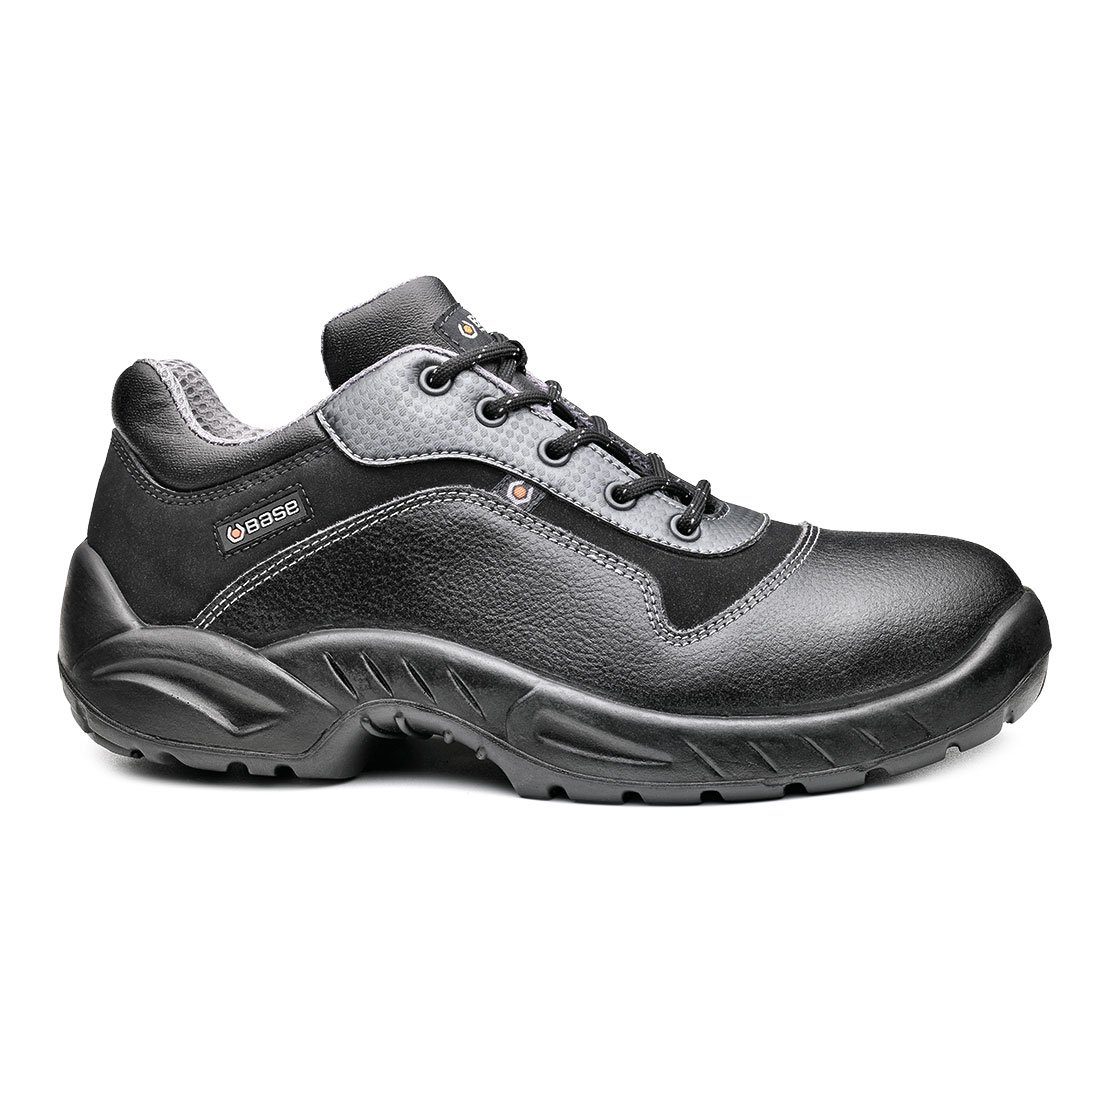 Base Footwear Sicherheitsschuhe S3 wasserdicht, schwarz durchtrittsicher, - Zehenschutz SRC B0166 Stahlkappe - Sicherheitsschuh Etoile